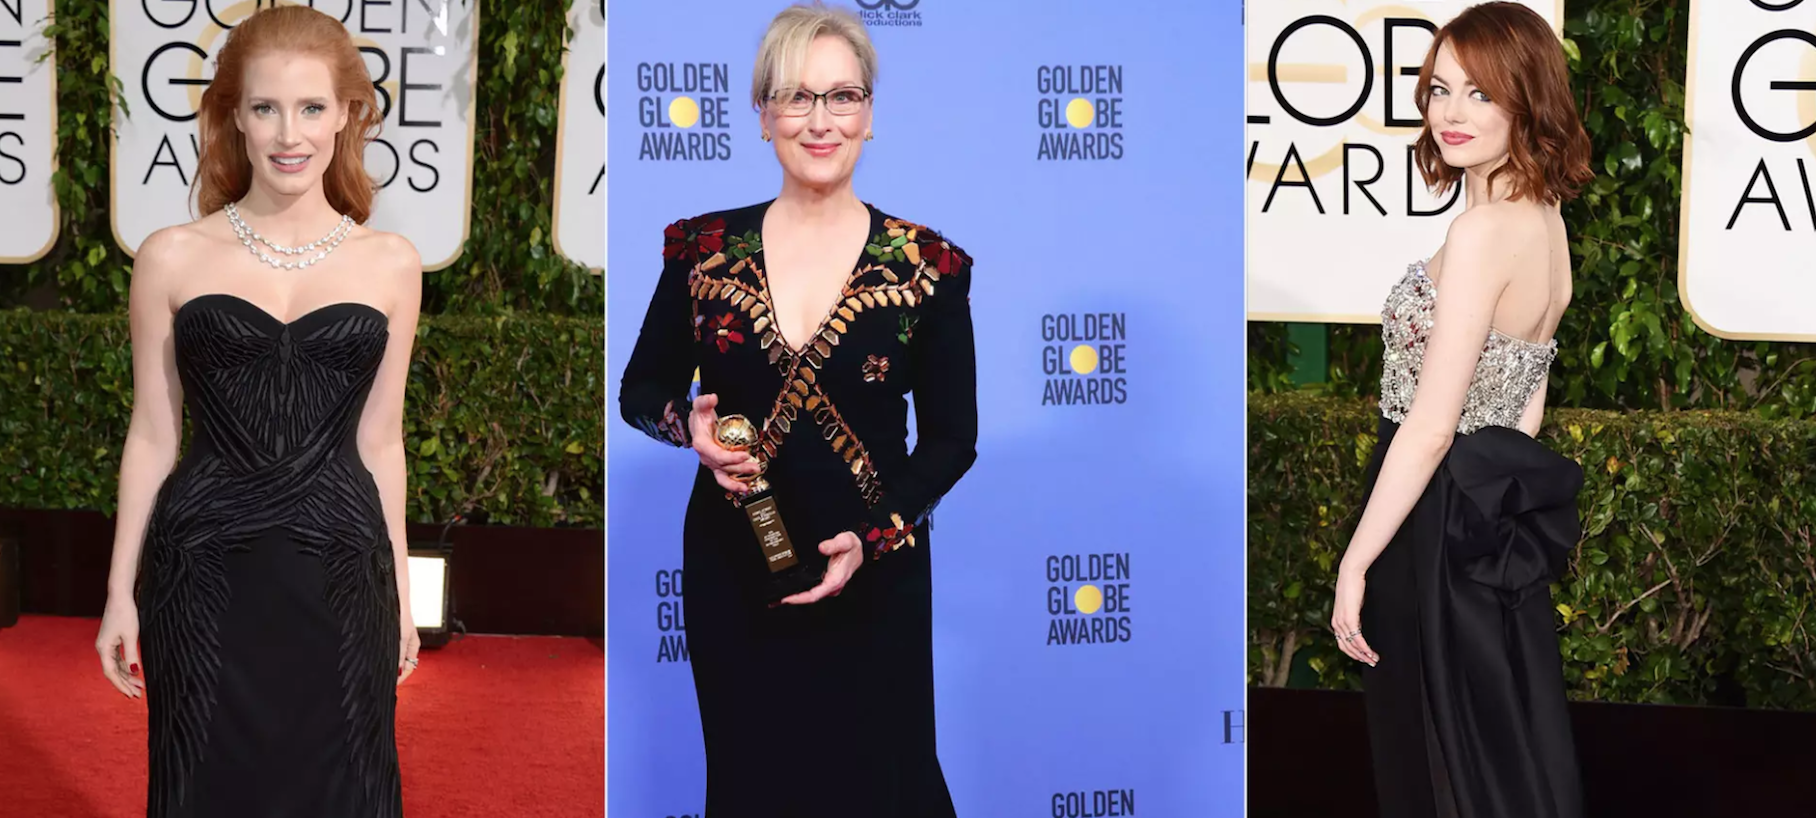 Golden Globes : les actrices seront en noir pour dénoncer le harcèlement sexuel